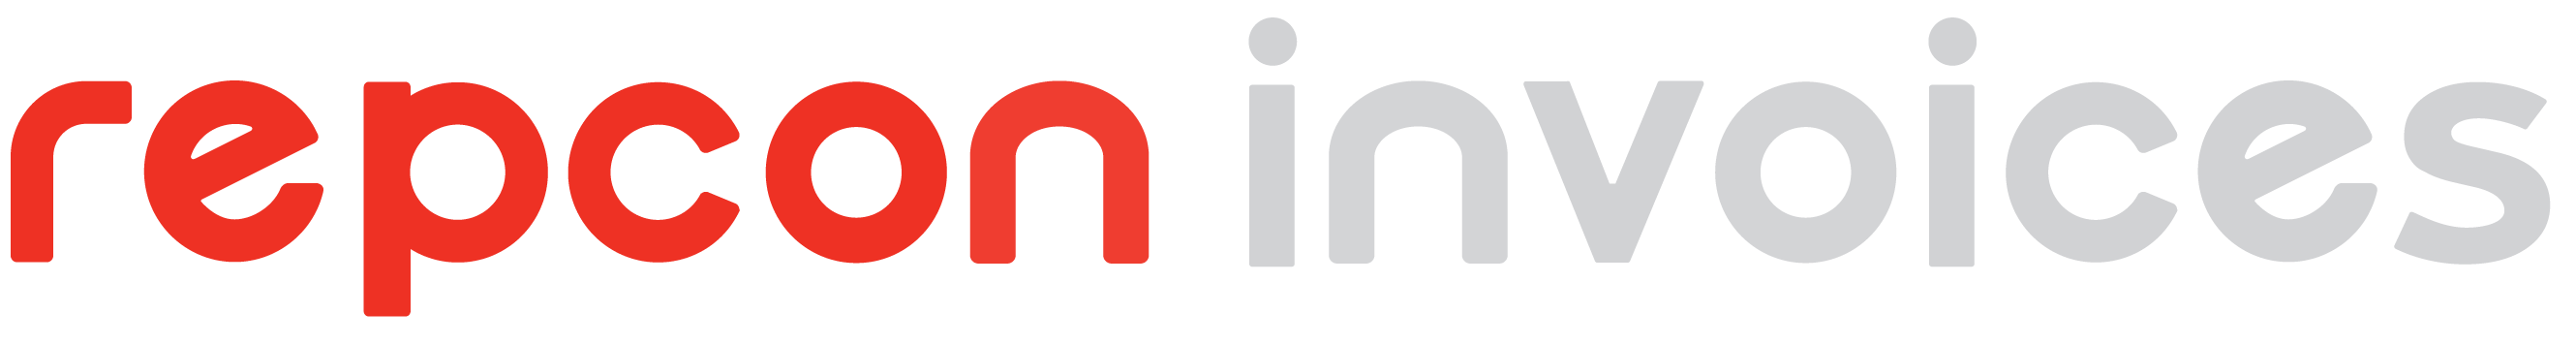 Logotipo Repcon Invoices